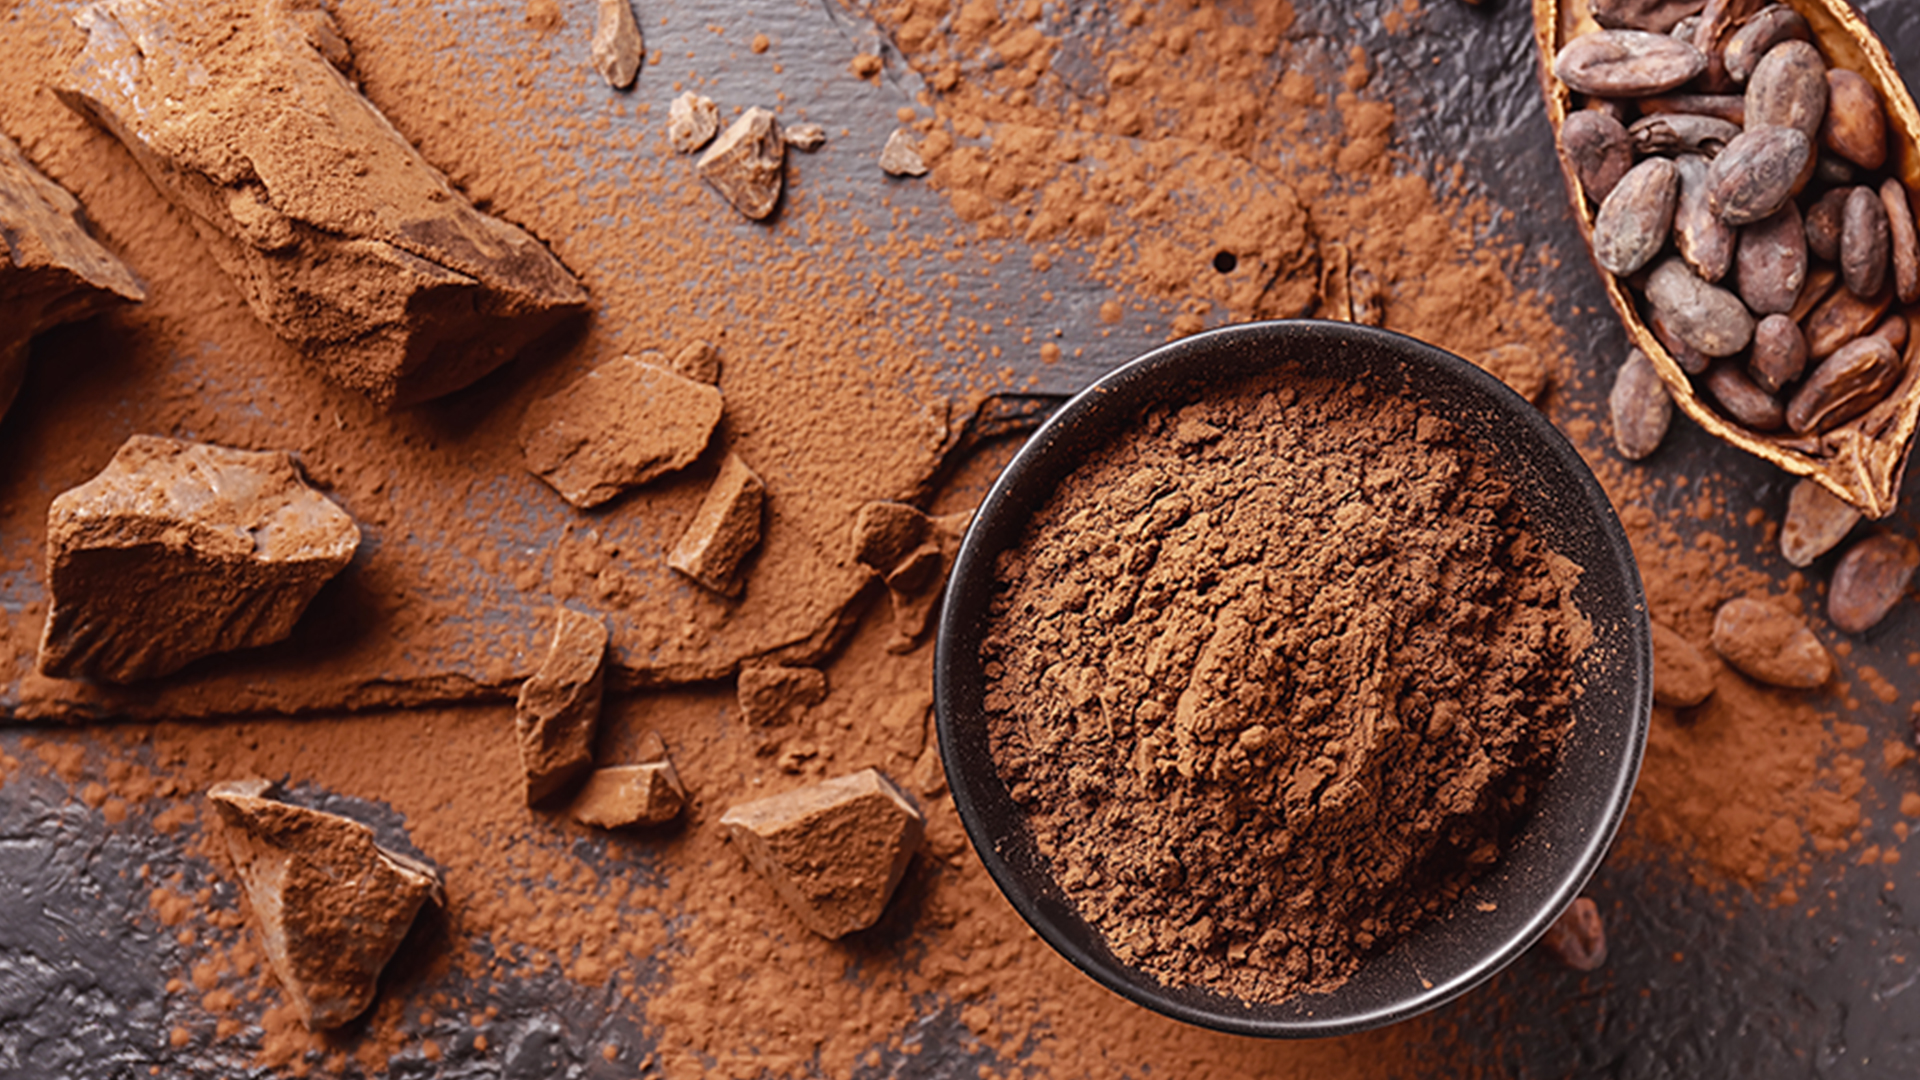 Studio clinico nutrizionale dell’efficacia di un integratore denominato “CHFC” a base di: polvere di cacao (Theobroma cacao), titolato in flavanoli.